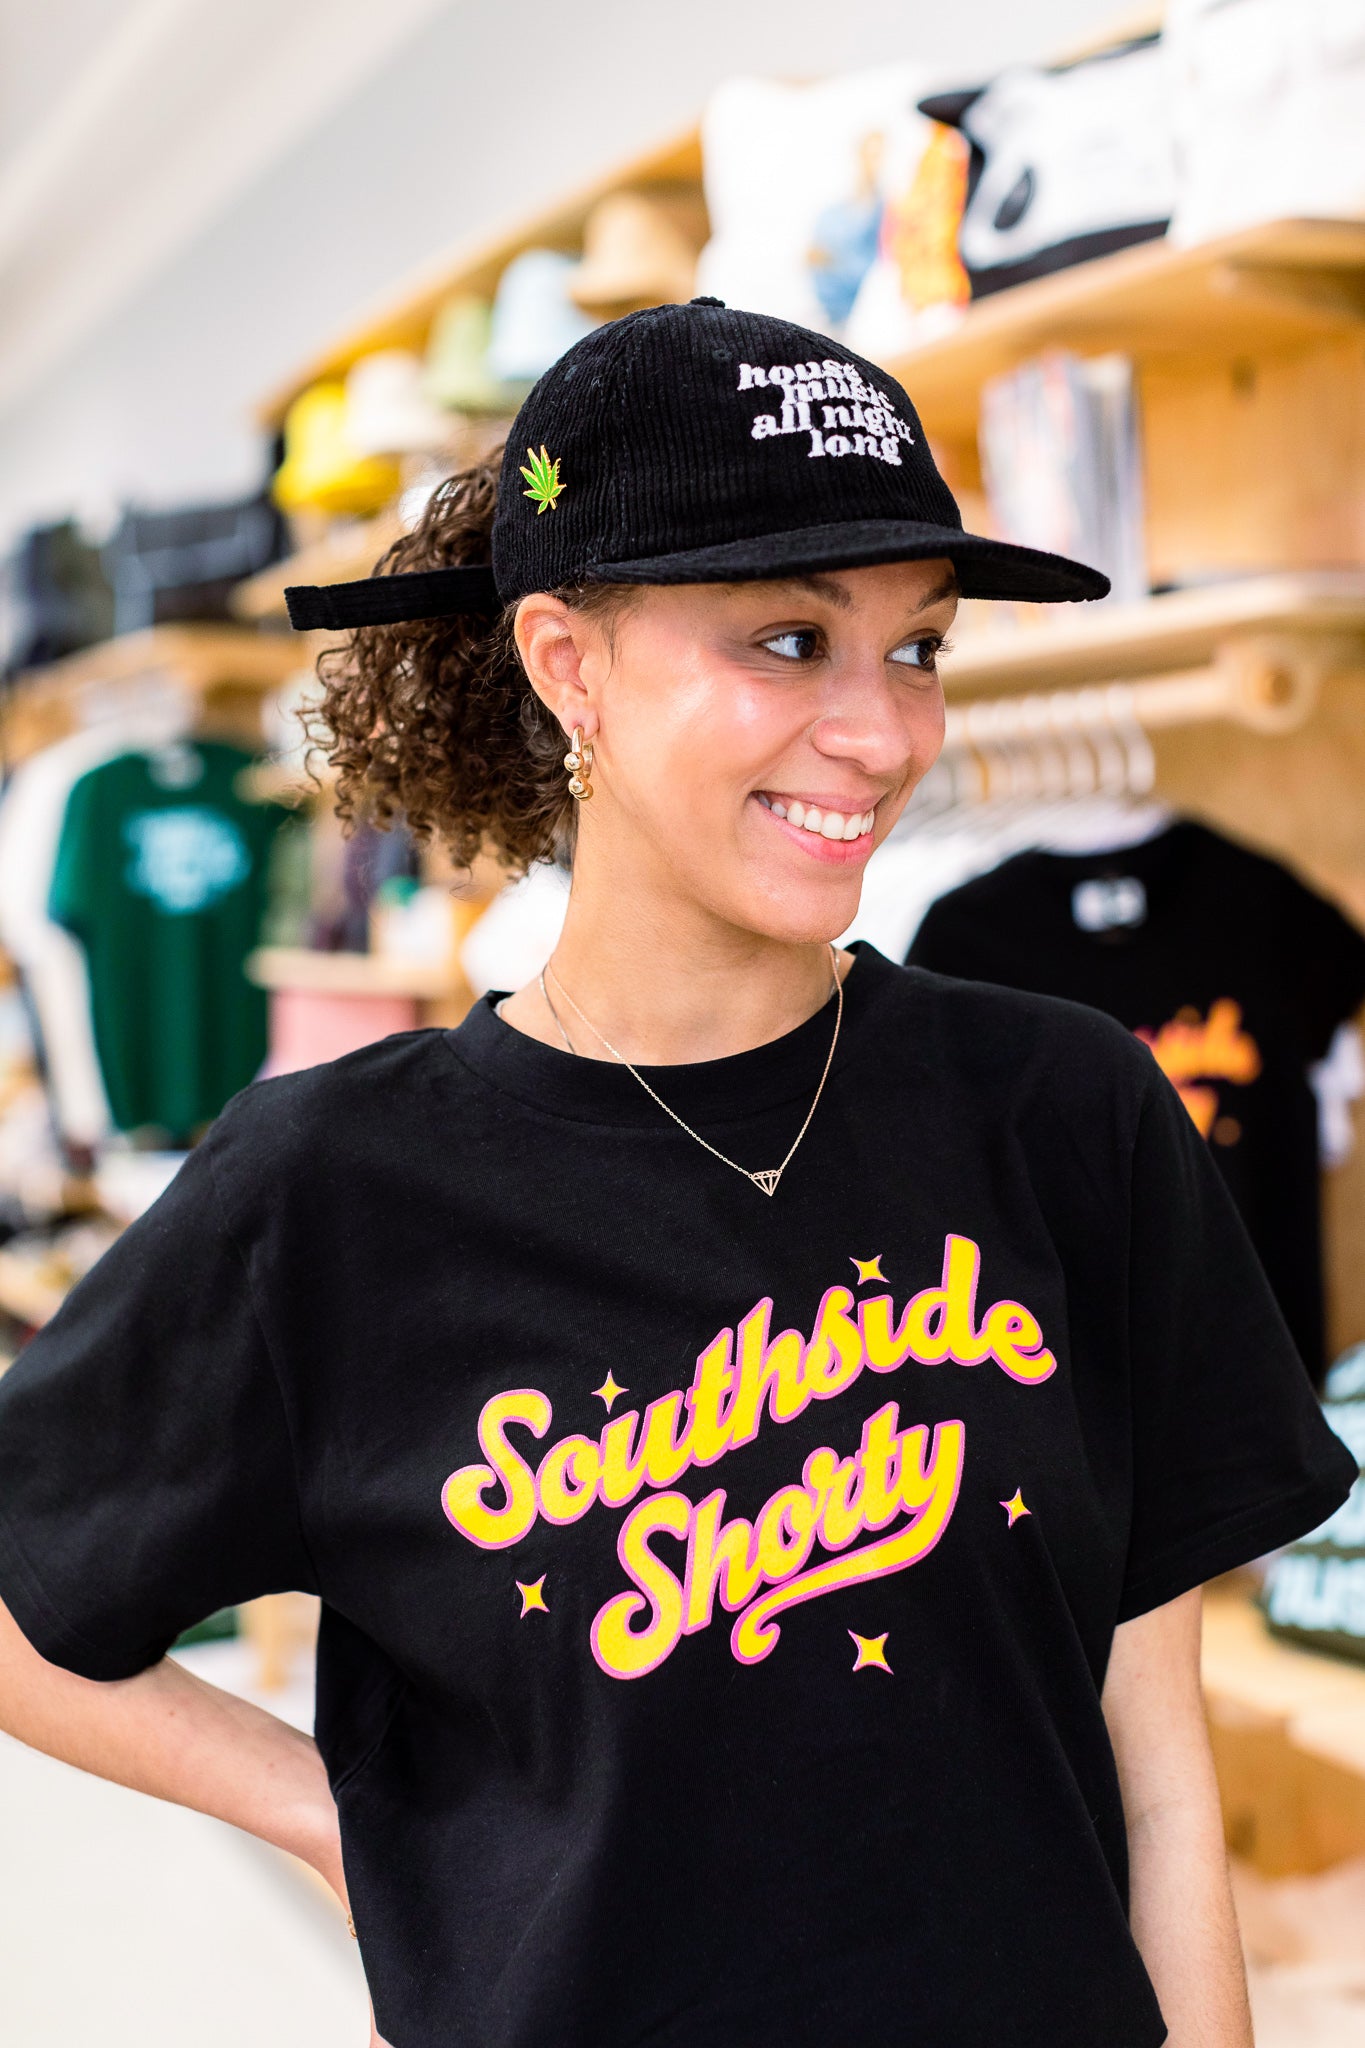 Silverroom | Southside Shorty Women's T-Shirt